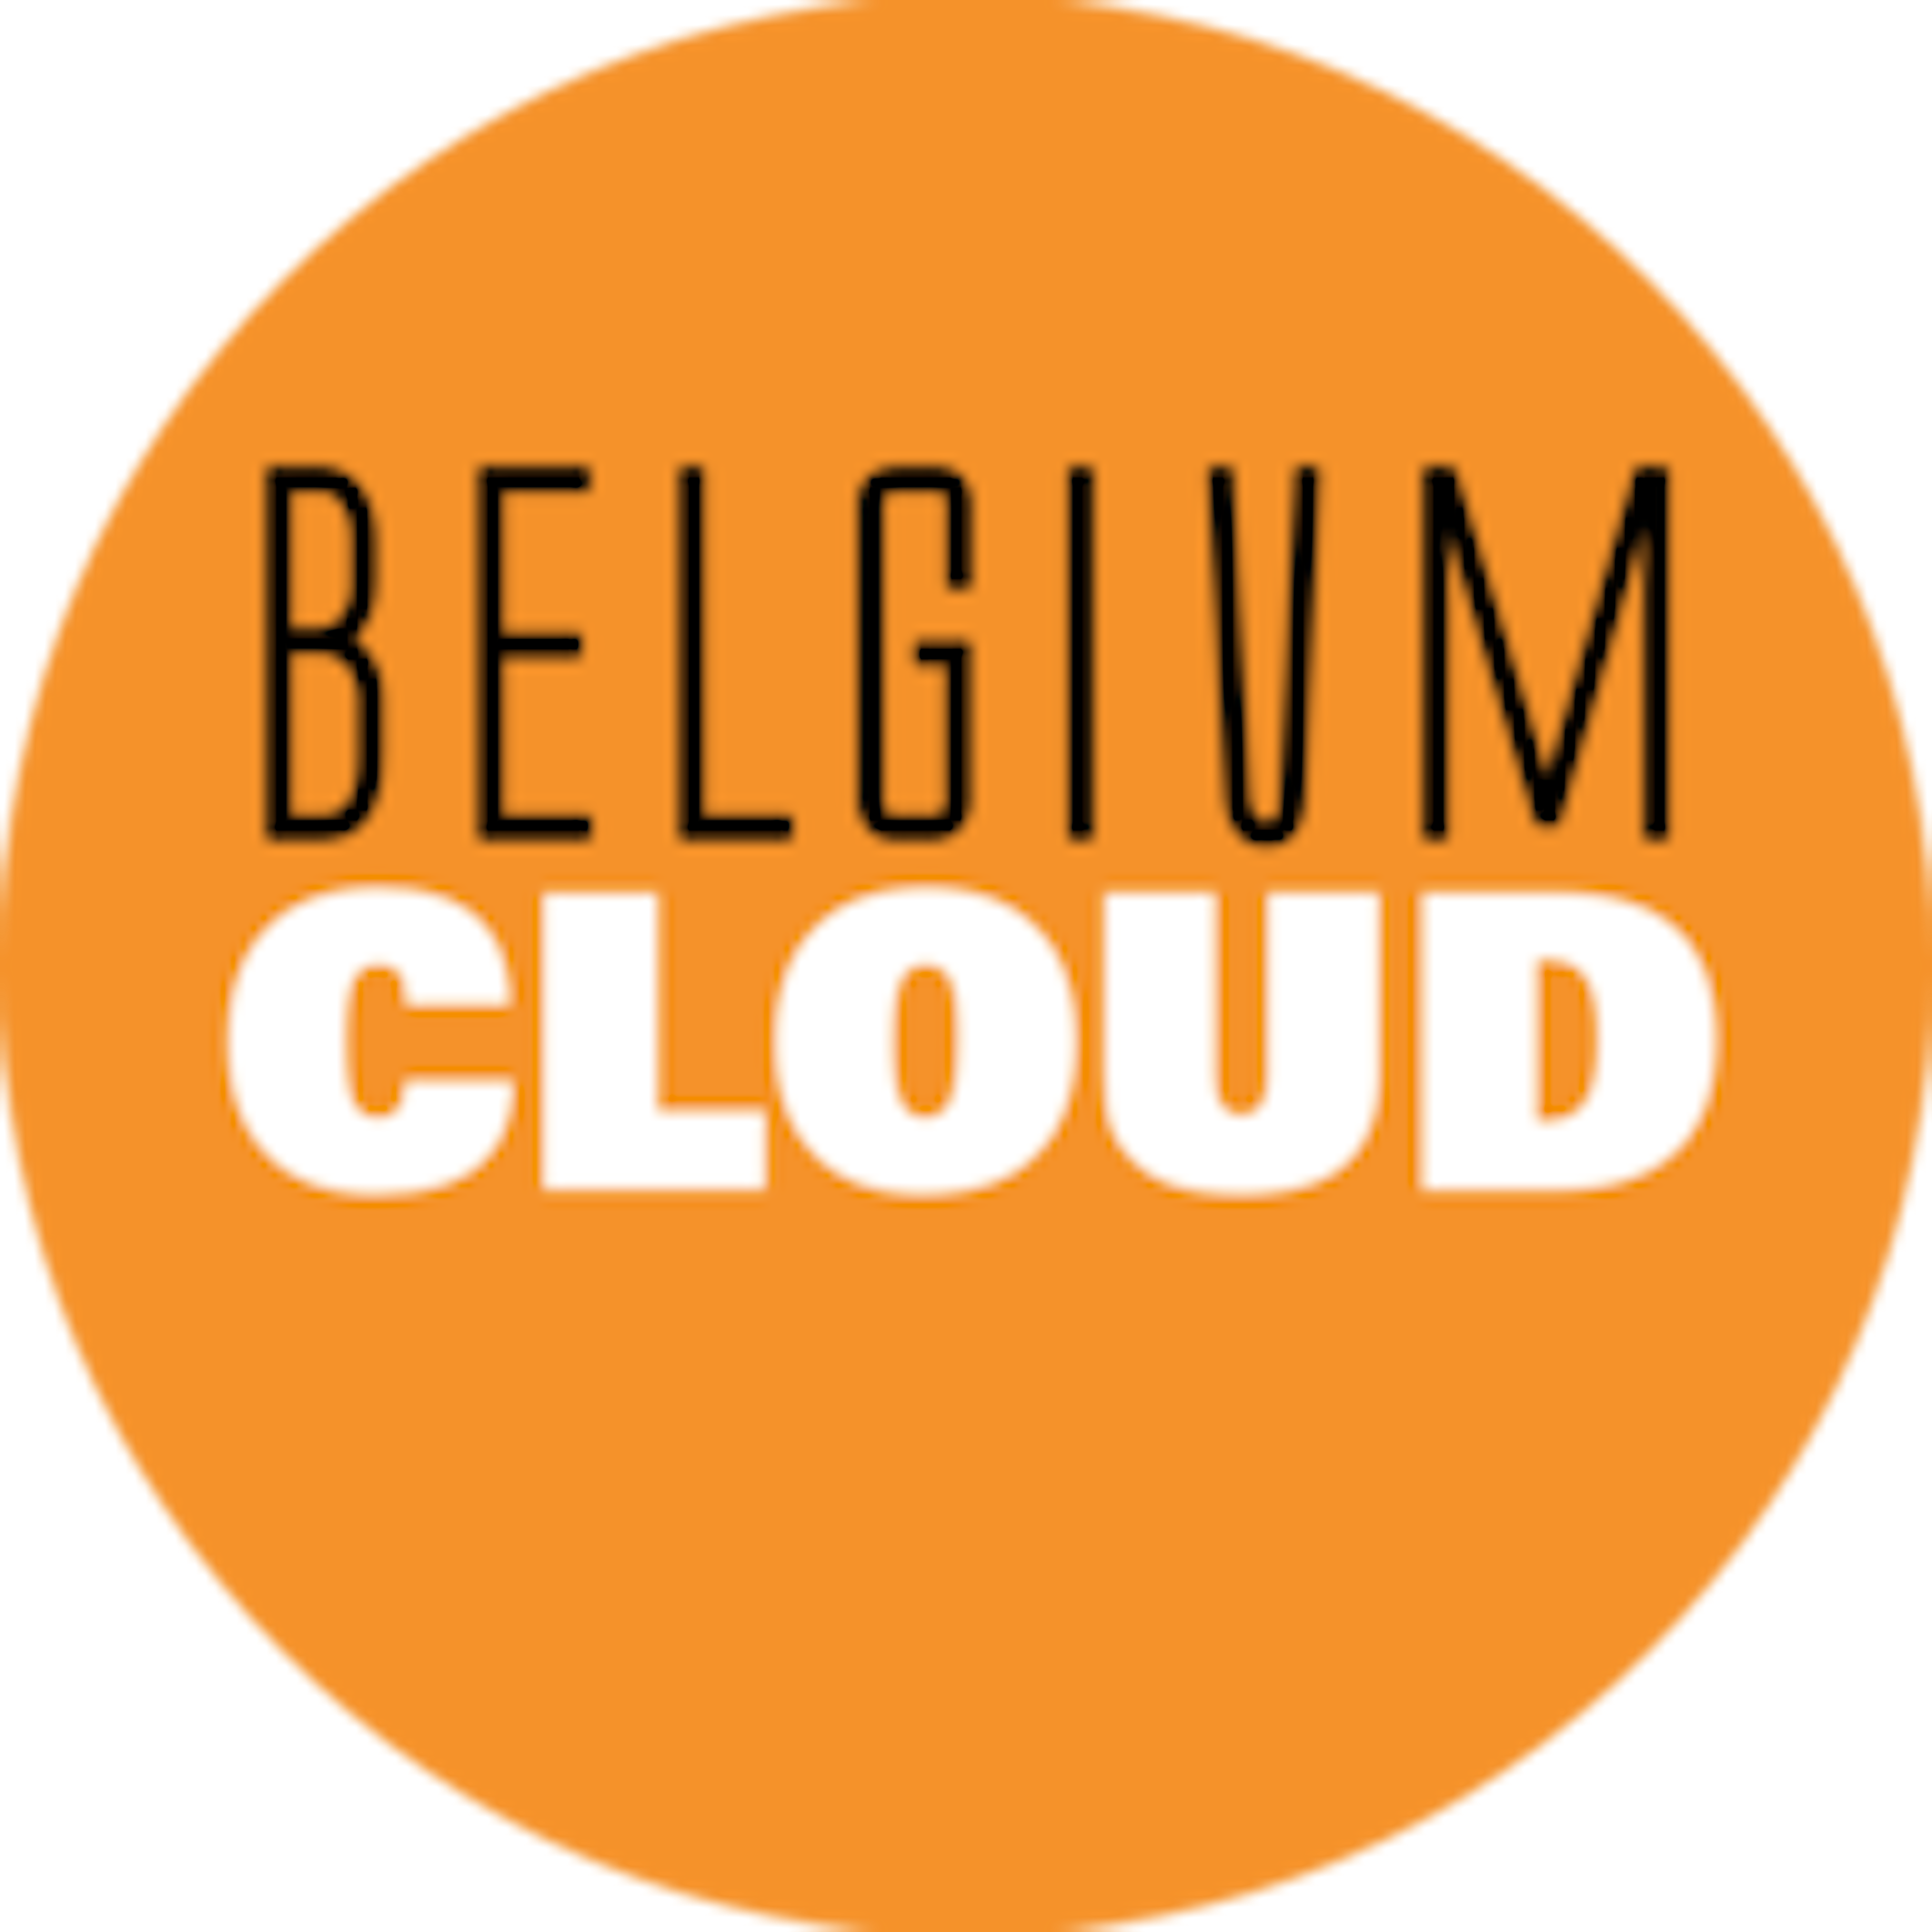 Belgiumcloud